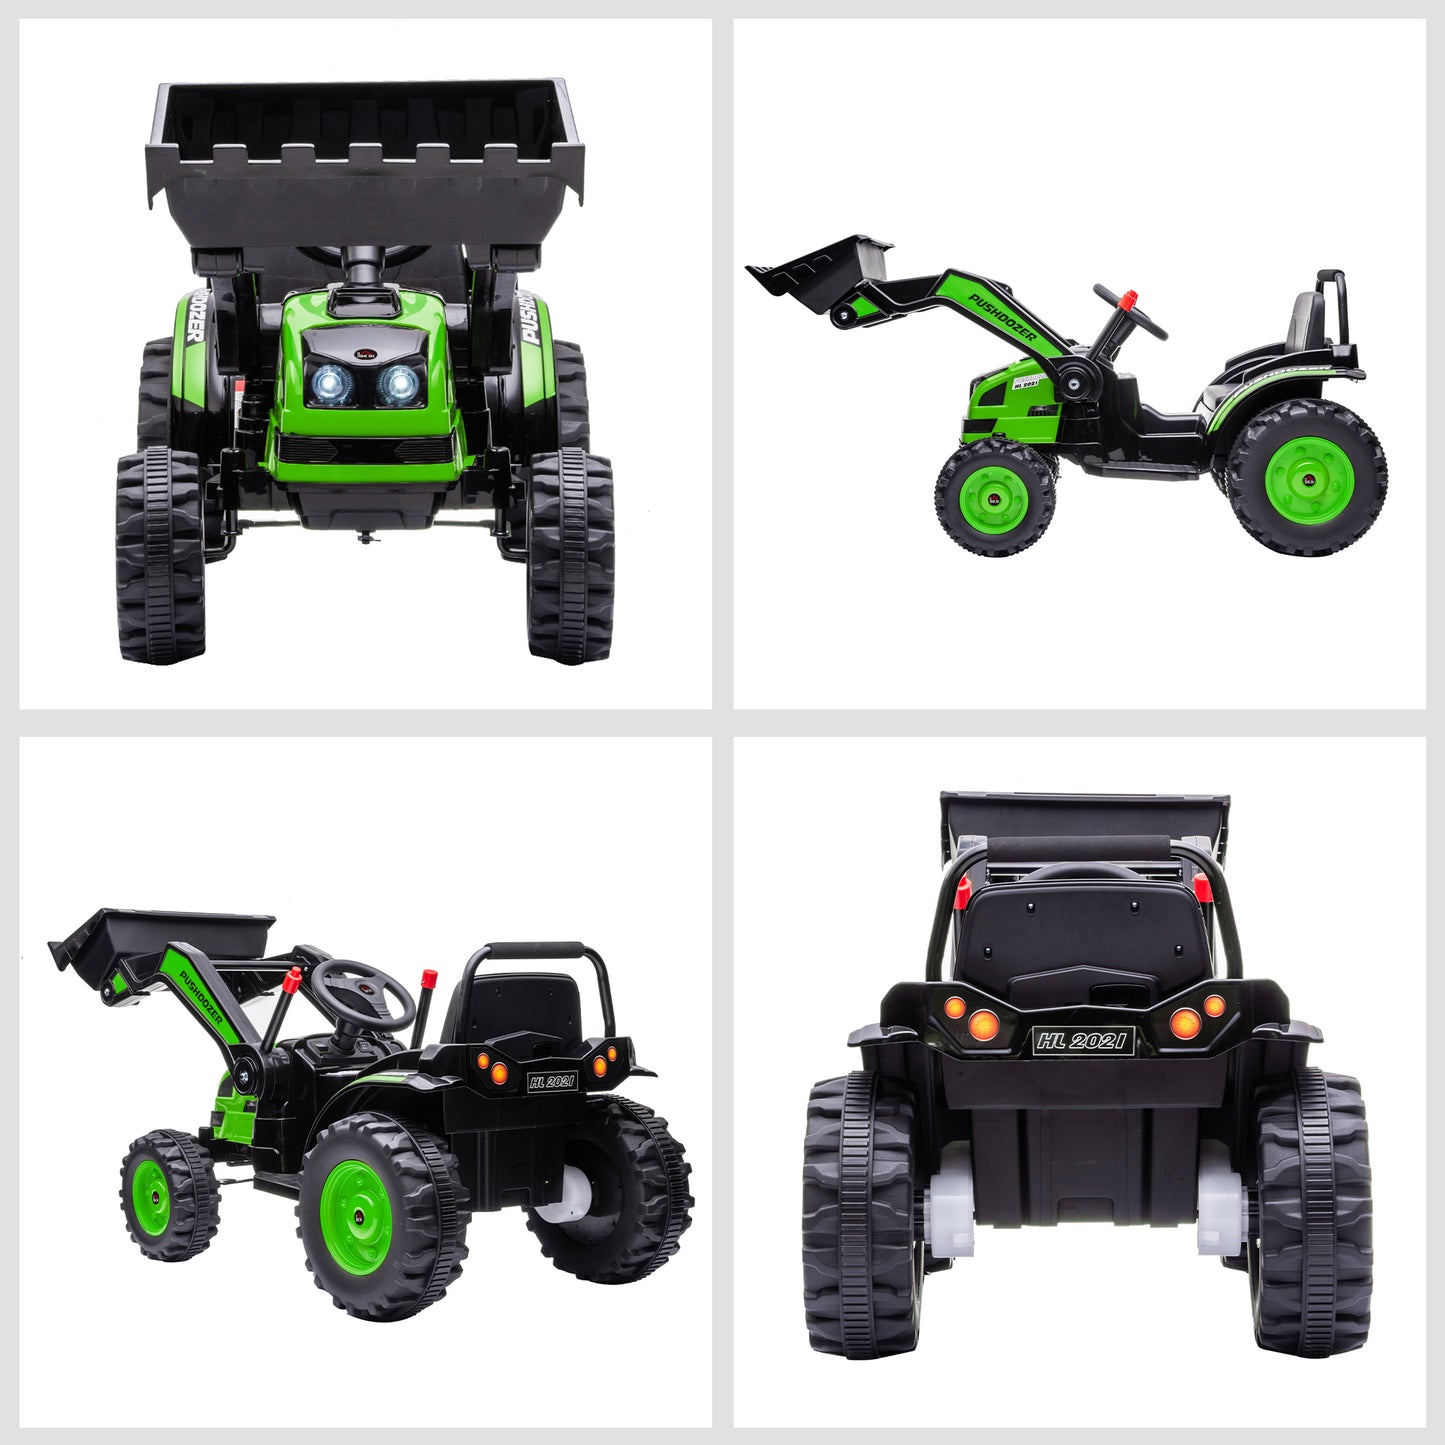 HOMCOM Tractor Excavadora Eléctrico para Niños de +3 Años Vehículo Infantil con Batería 6V Pala Música y Luces Velocidad de 2 Niveles 132x62x65 cm Negro y Verde